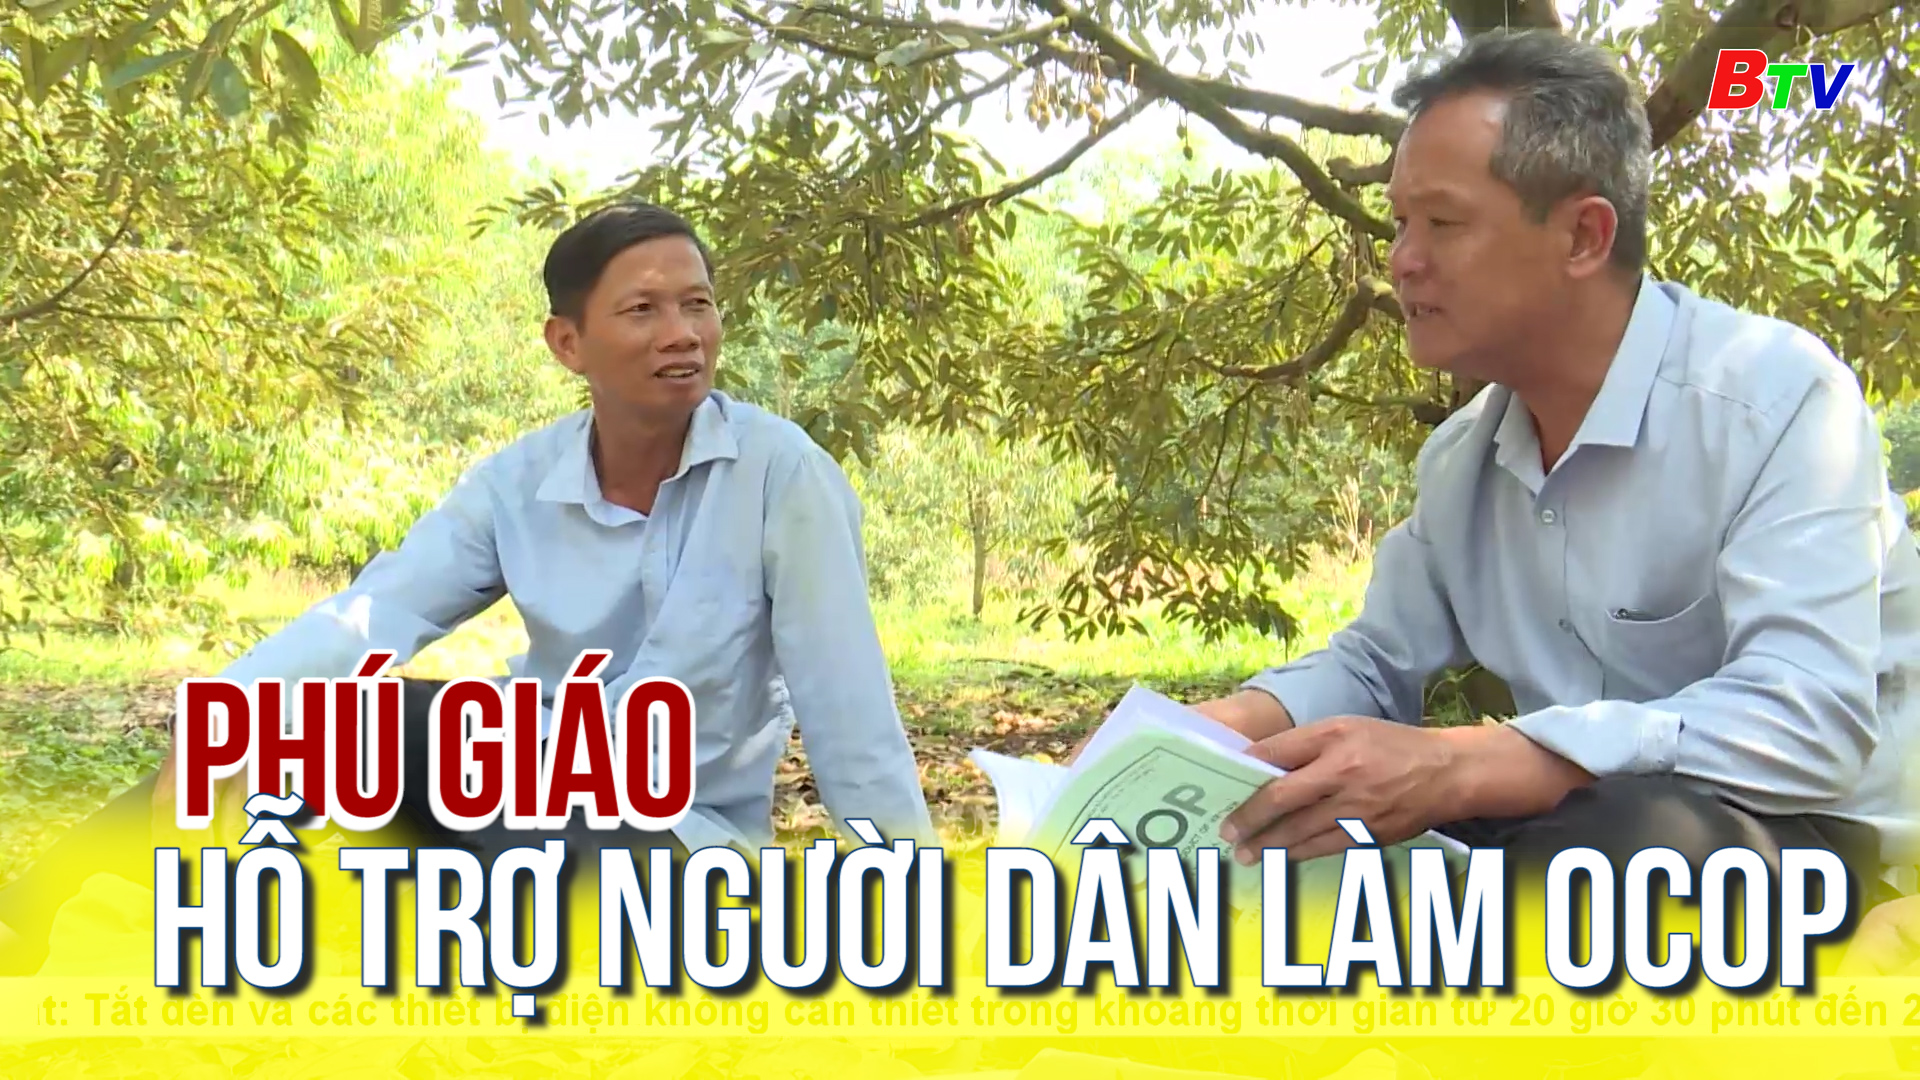 Phú Giáo hỗ trợ người dân làm OCOP